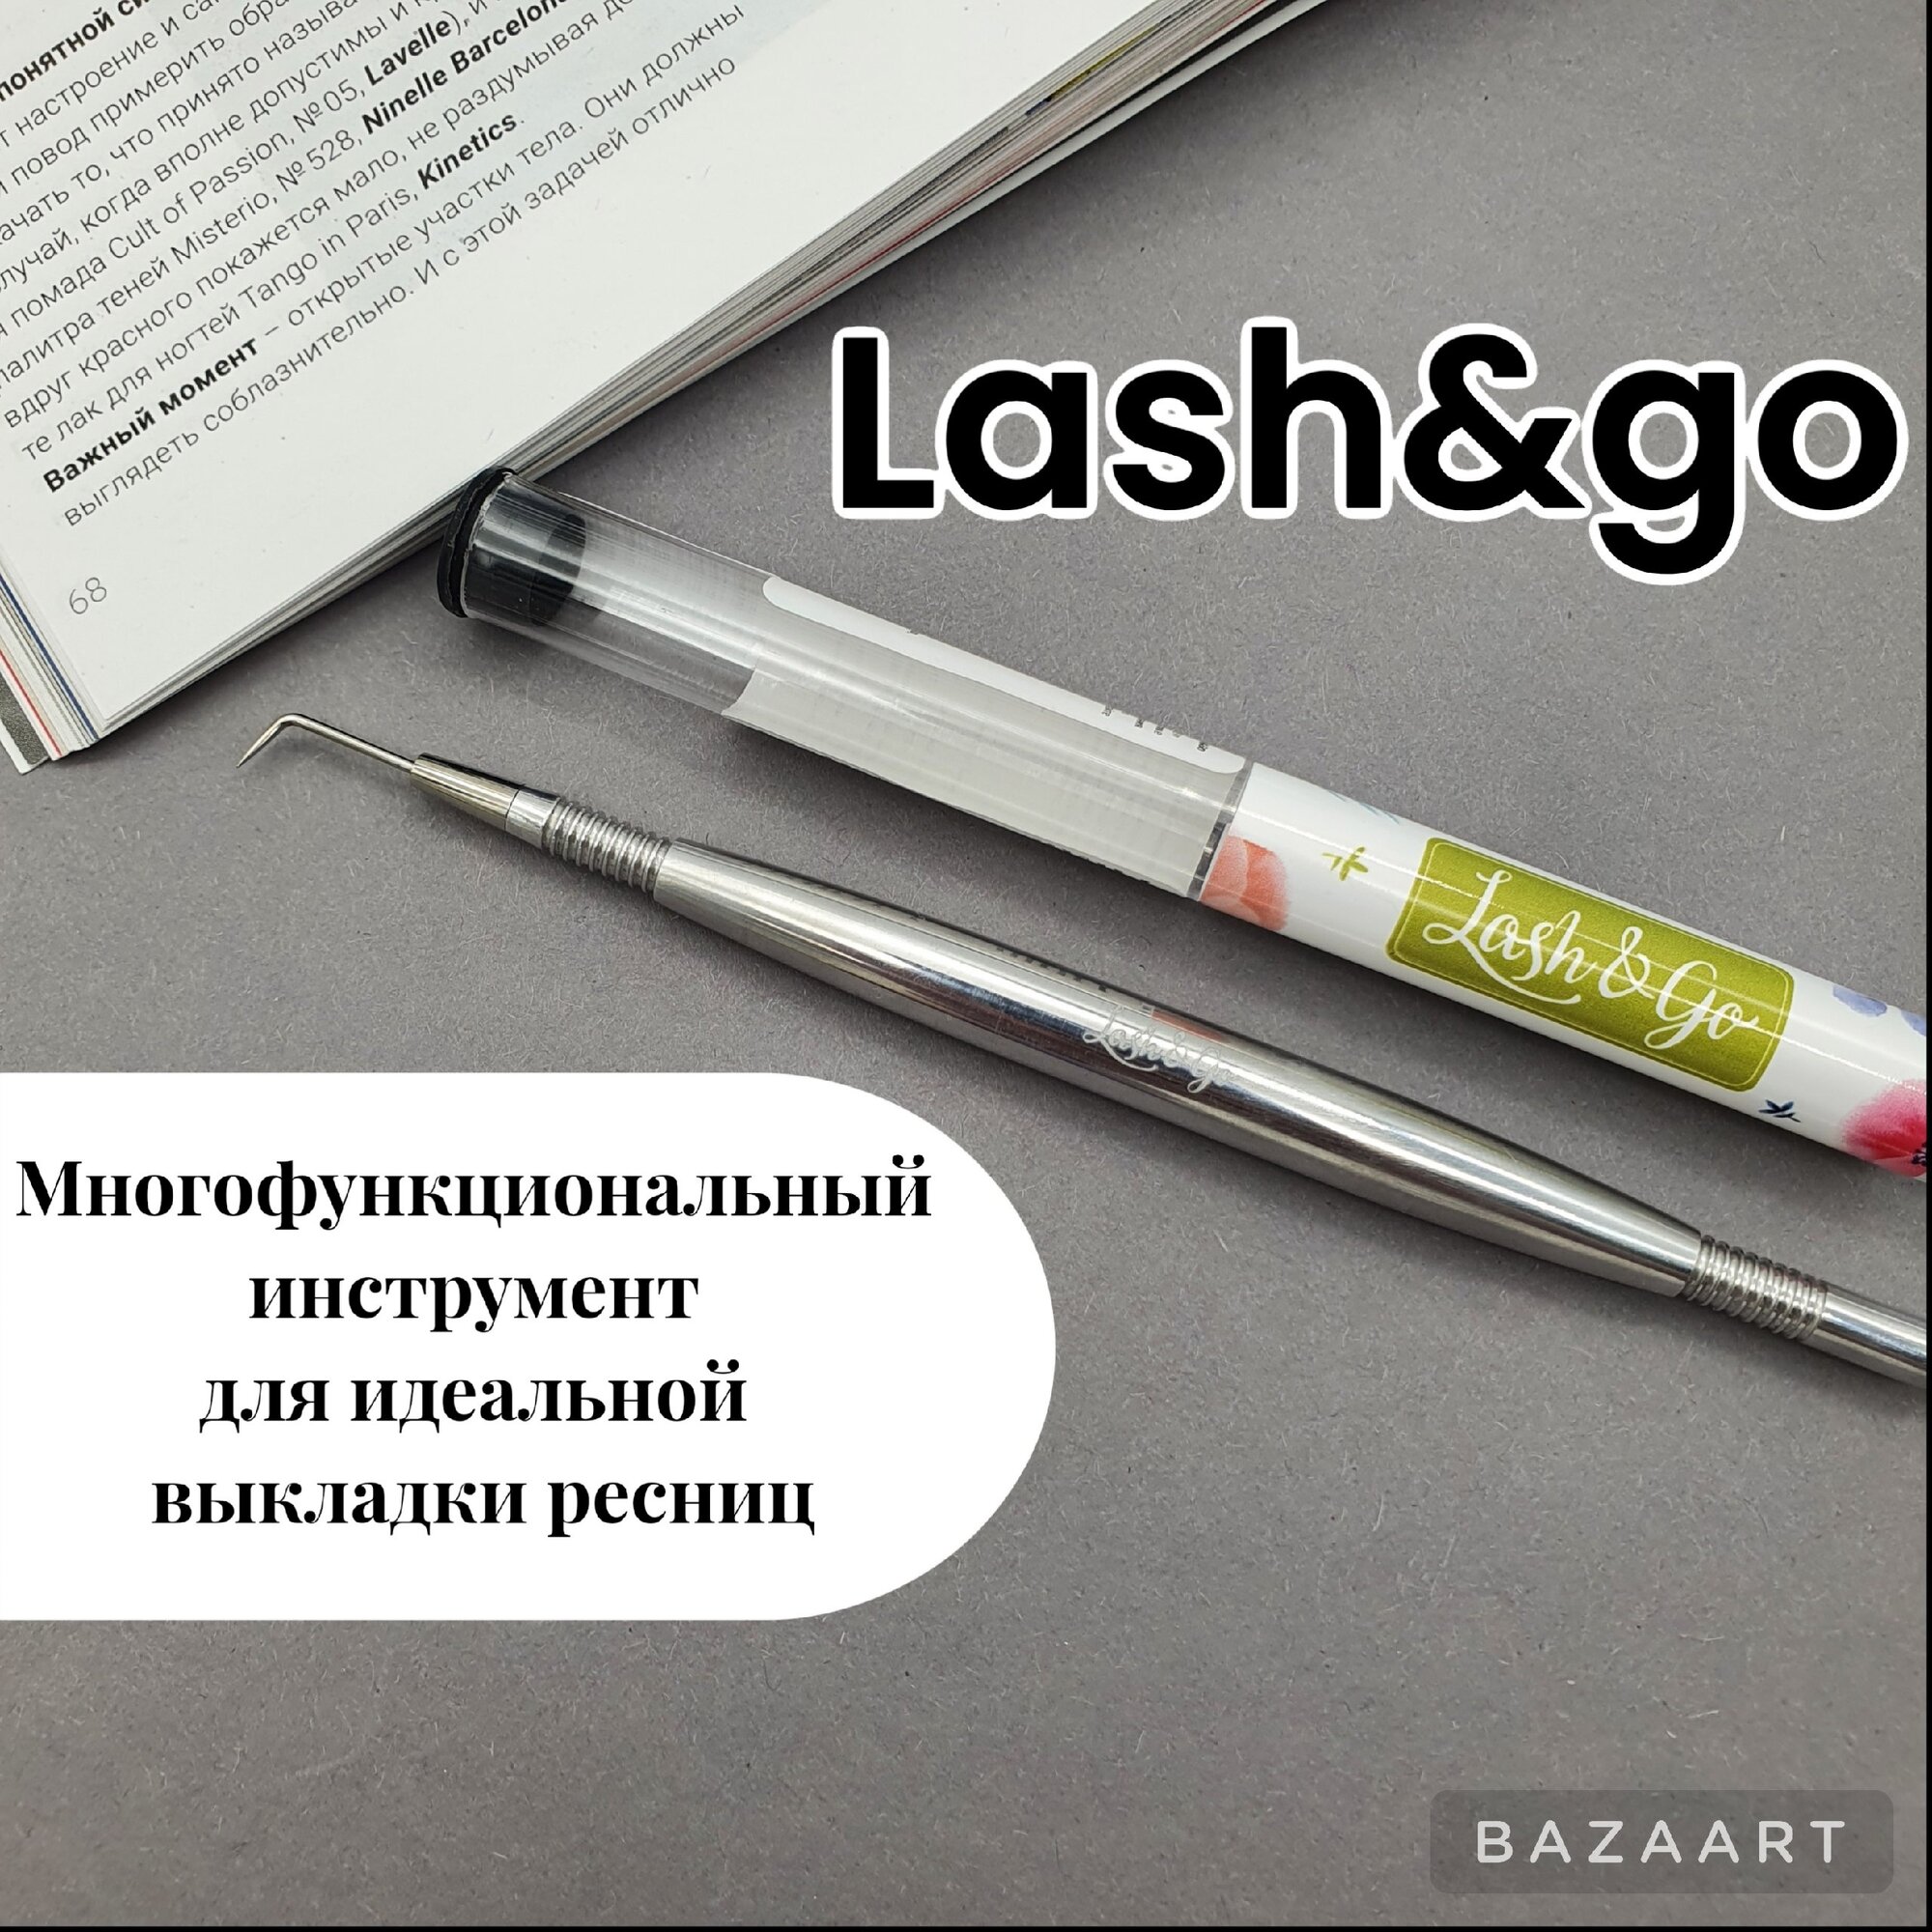 Многофункциональный инструмент для ламинирования ресниц Lash&Go